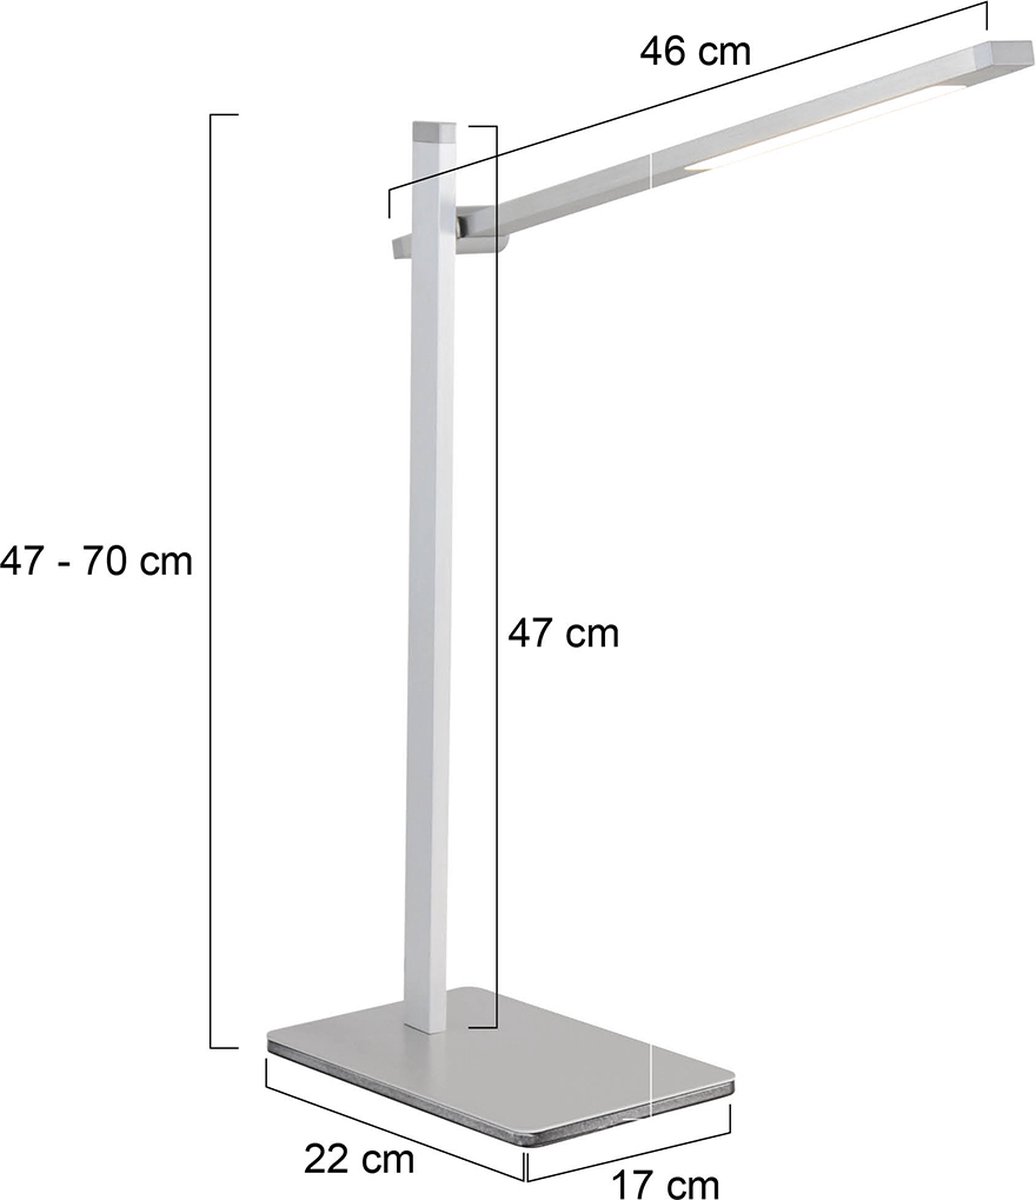 Tafellamp Stekk | 1 lichts | grijs / zilver / staal | aluminium / kunststof | 80 cm hoog | lees lamp / bureaulamp | modern / functioneel design